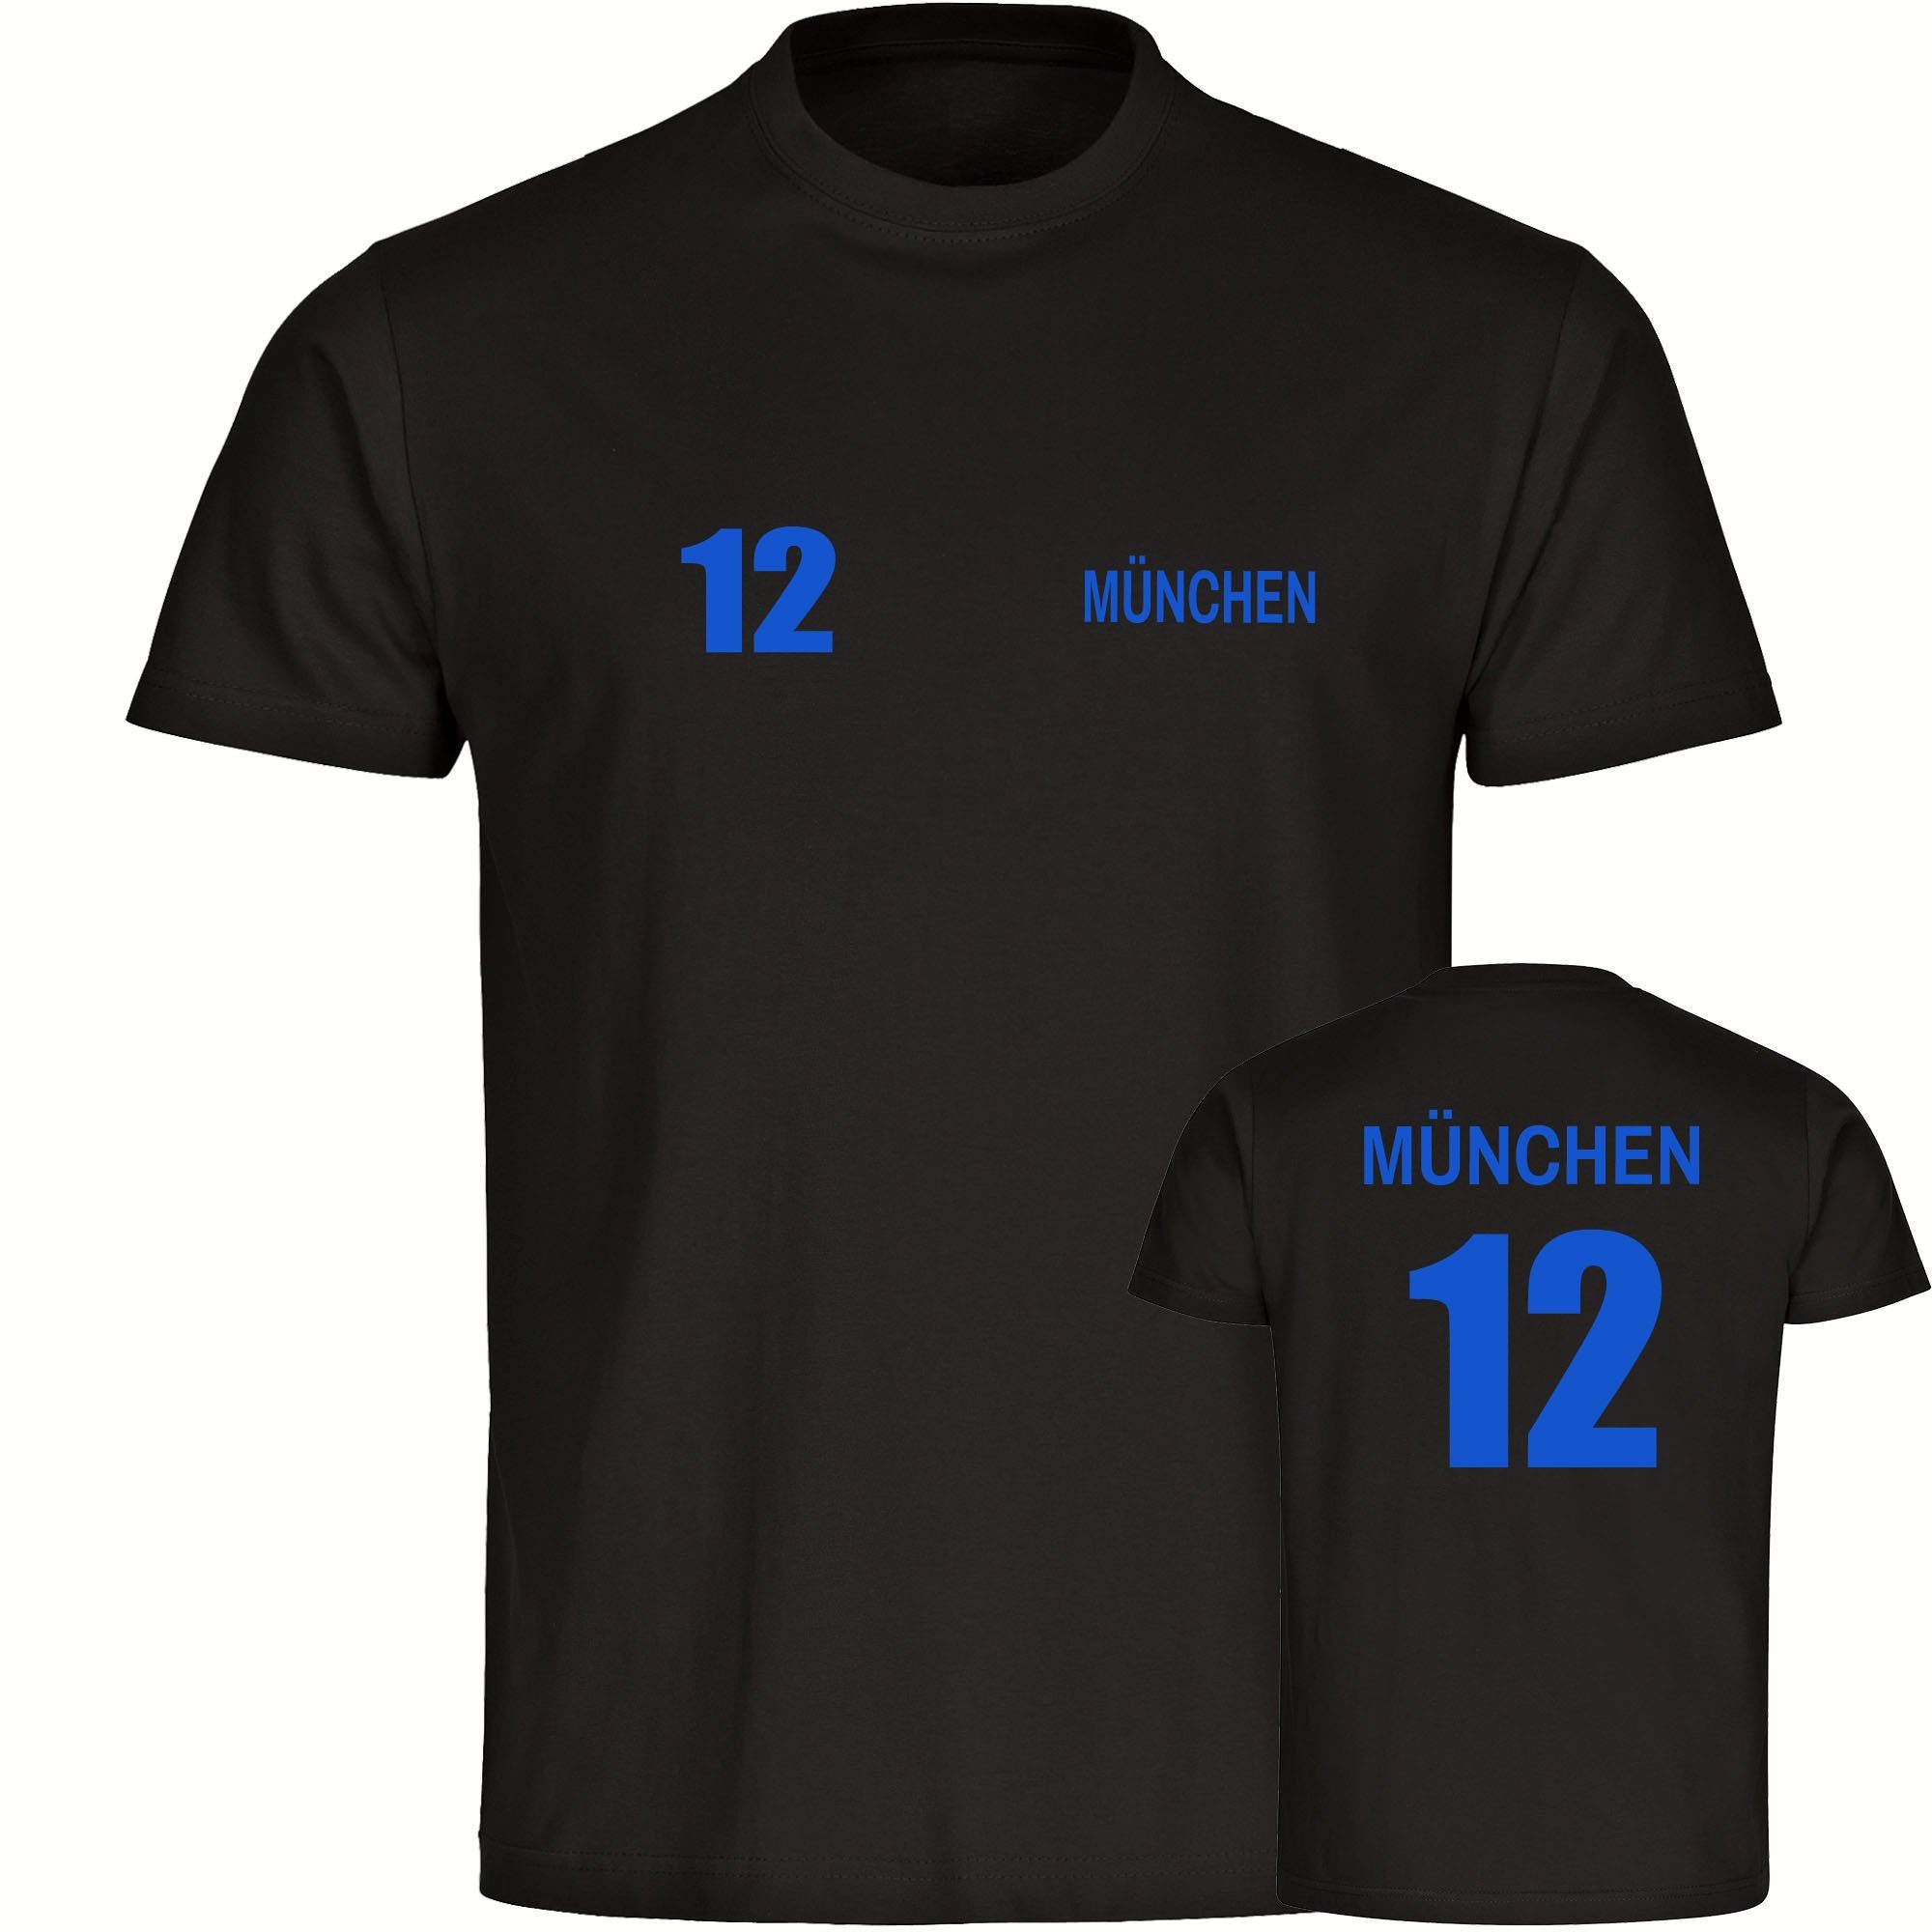 multifanshop T-Shirt Herren München blau - Trikot 12 - Männer